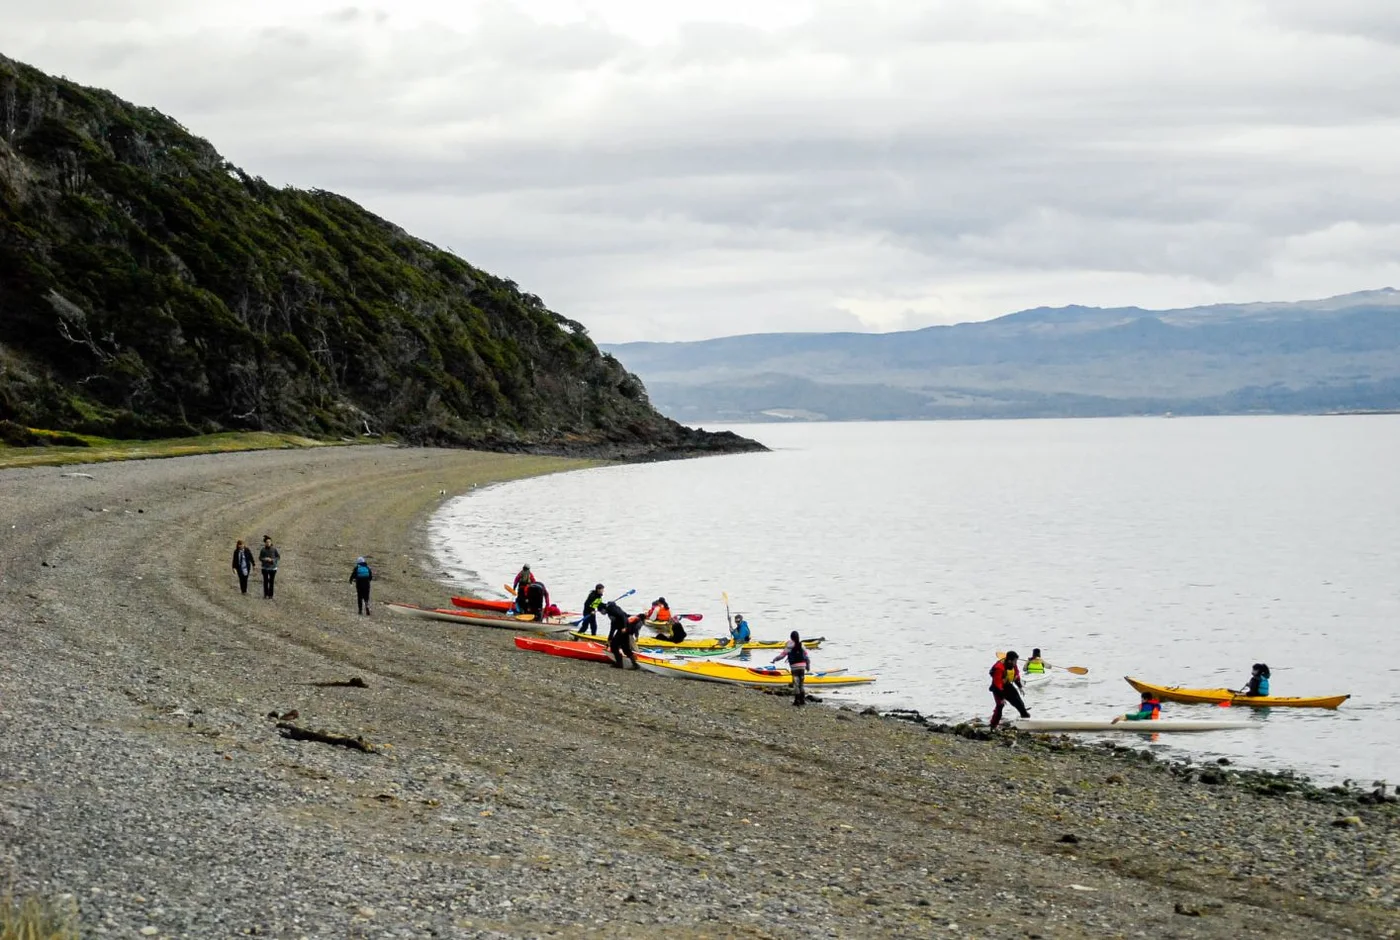 Jóvenes kayakistas partieron desde dicha institución rumbo a la zona de playa larga.